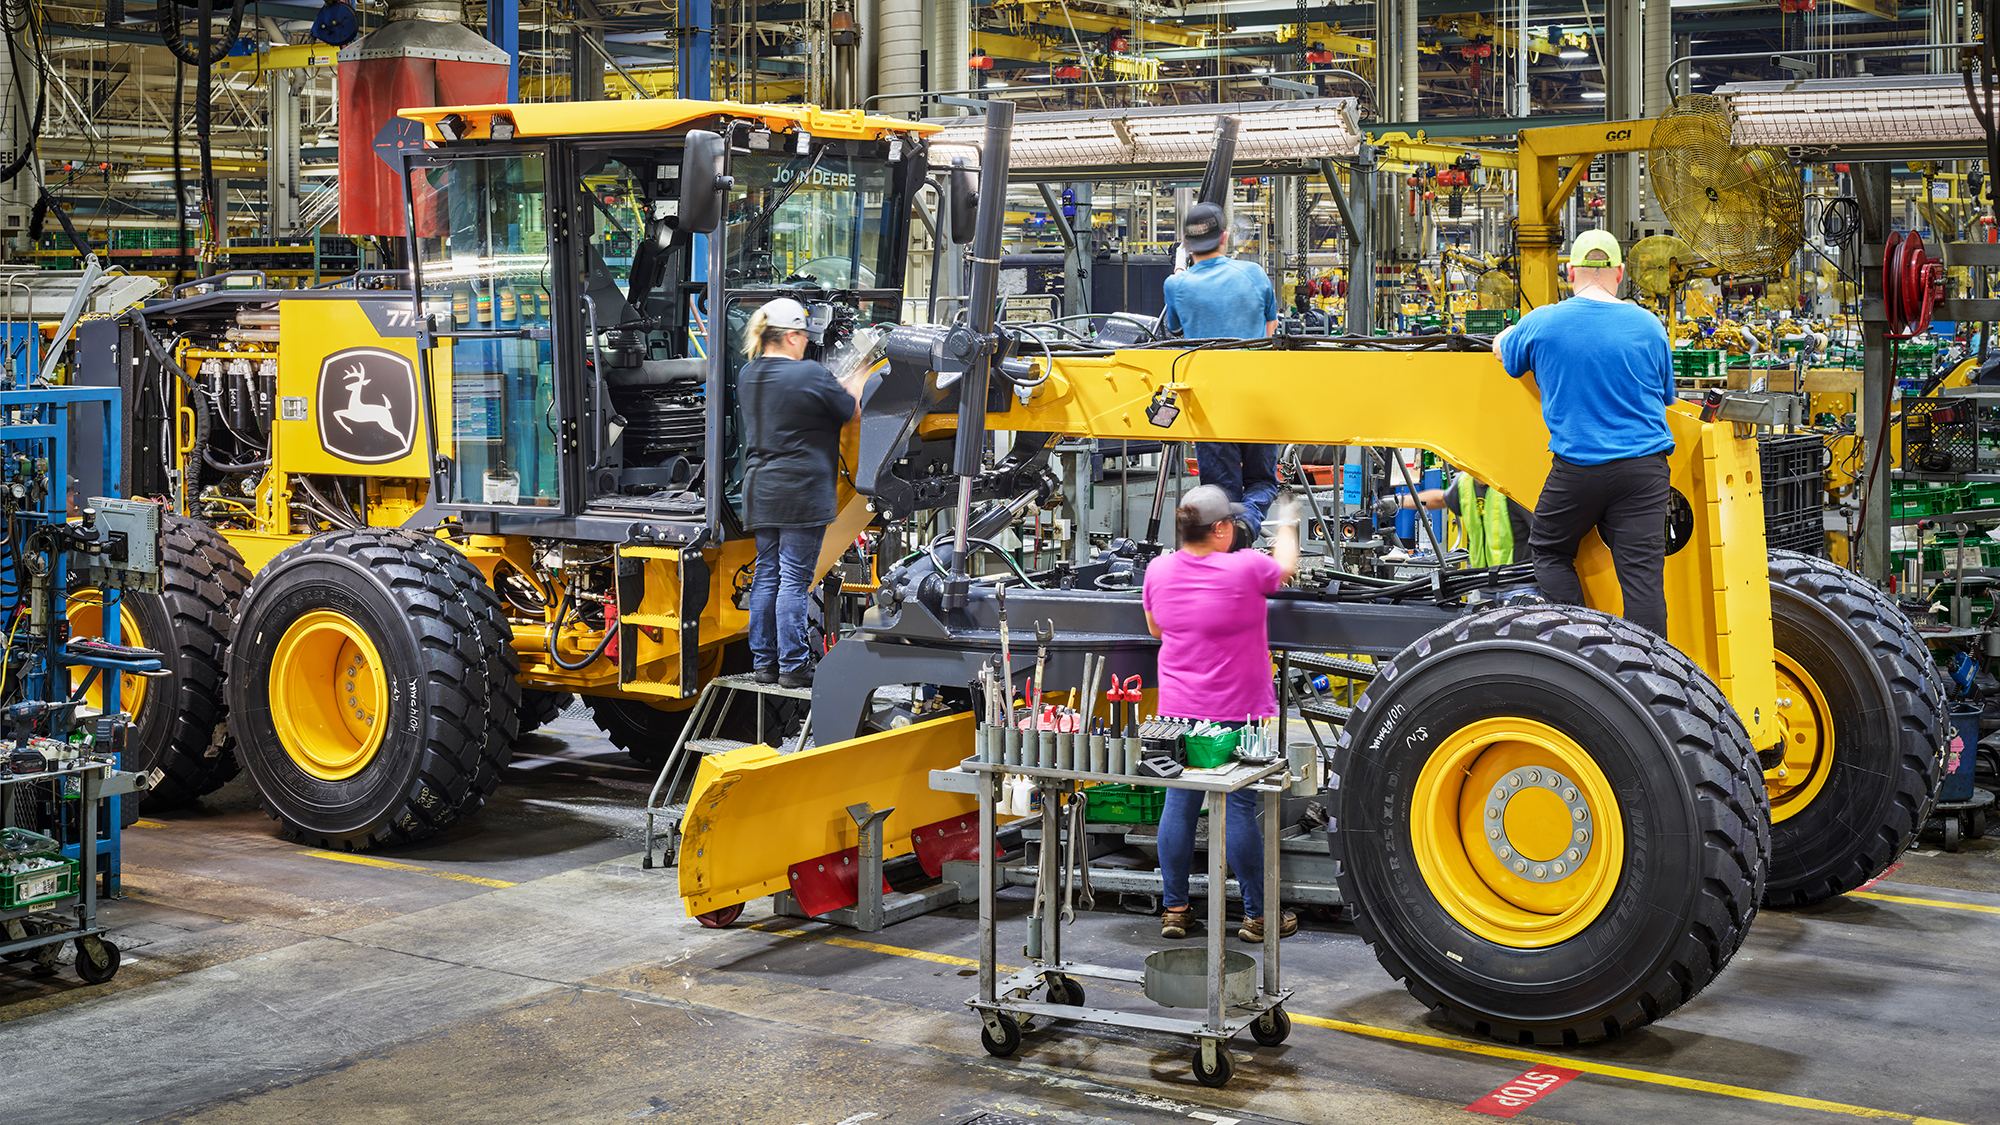 In photos: How John Deere builds its massive machines